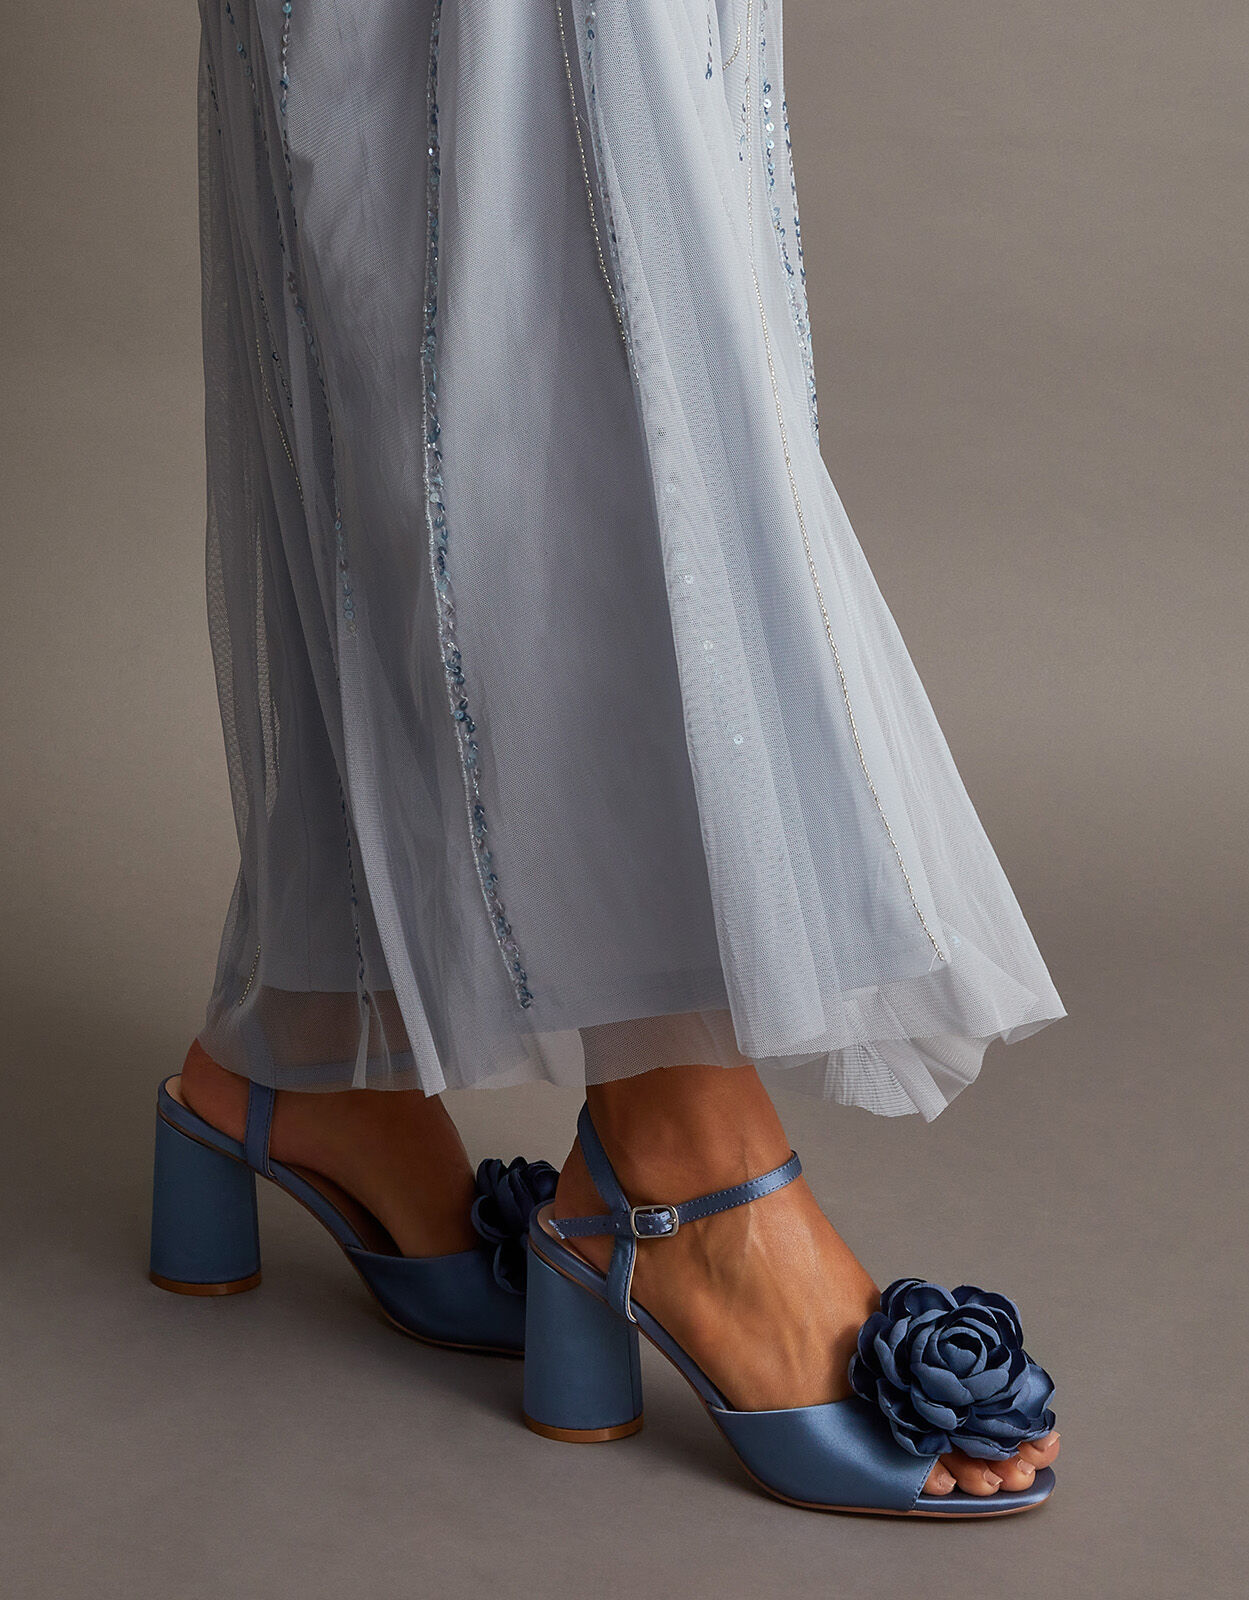 Be Mine Bridal Vanya platform sandals in pale blue satin | ASOS